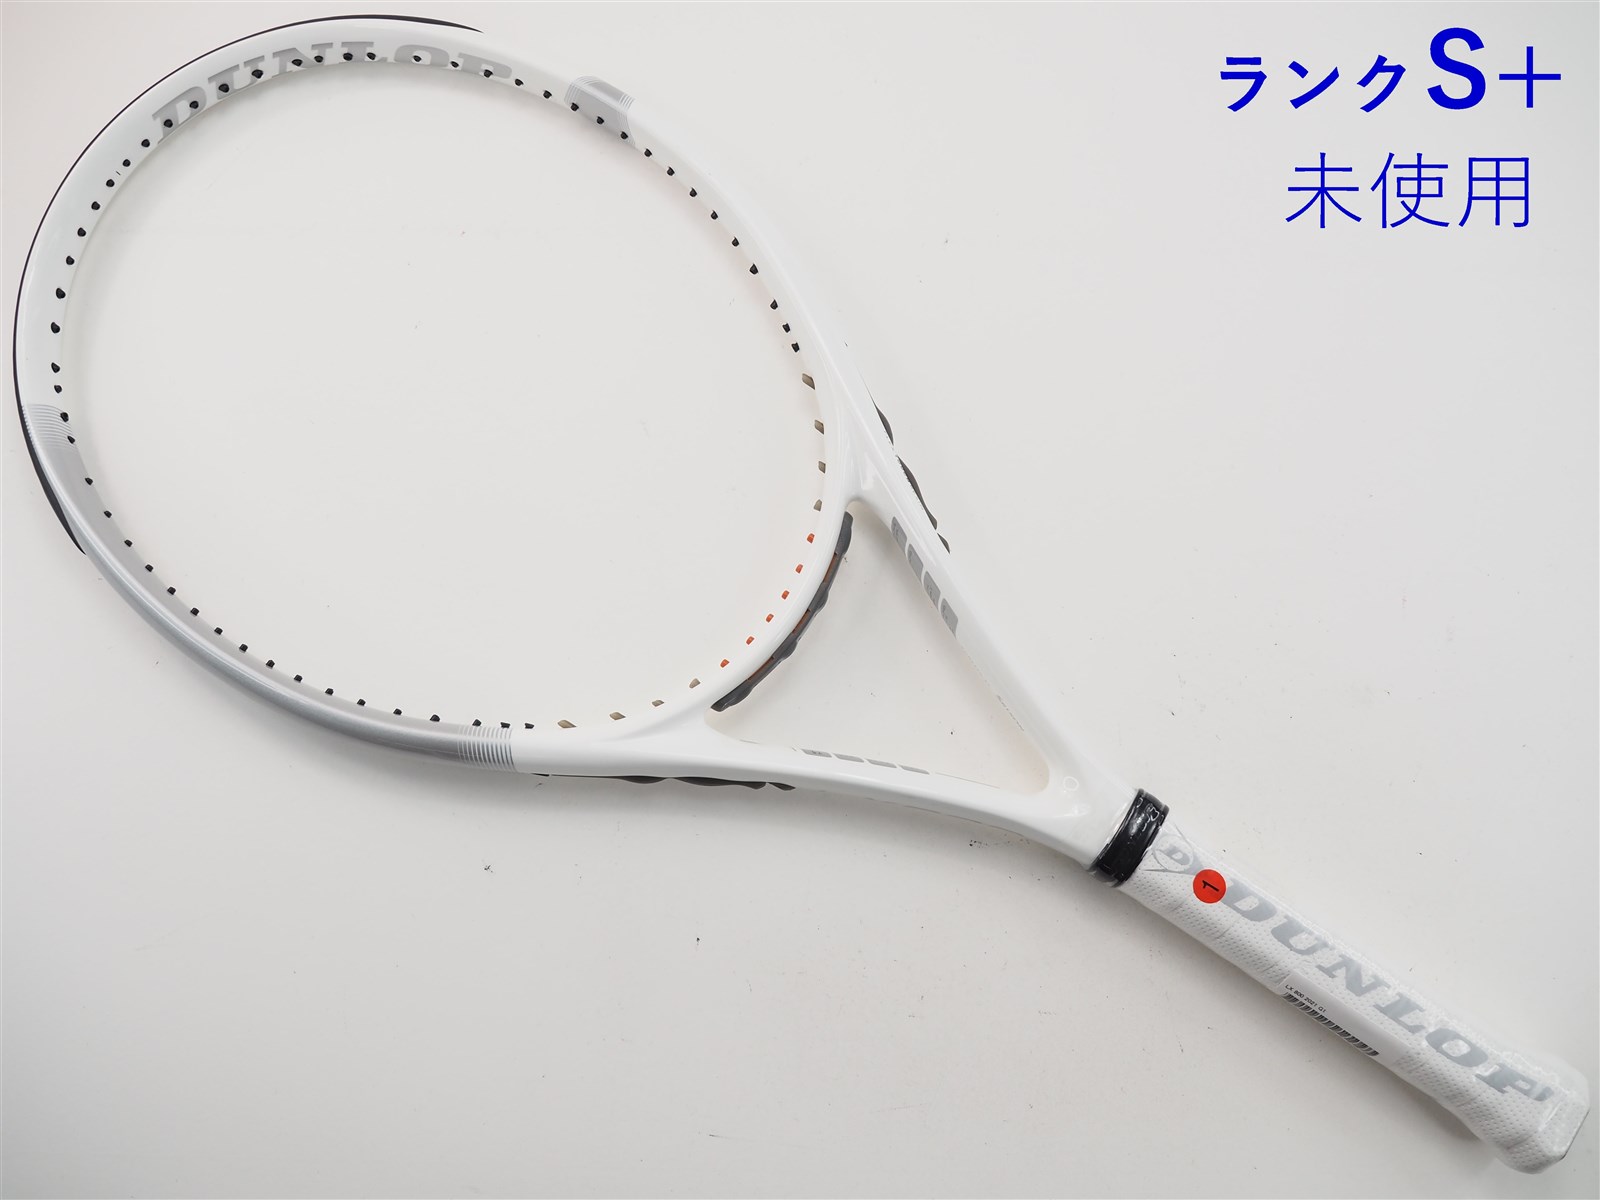 ダンロップ エルエックス 800 2021年モデルDUNLOP LX 800 2021(G1)【テニスラケット】【送料無料】の通販・販売| ダンロップ|  テニスサポートセンターへ